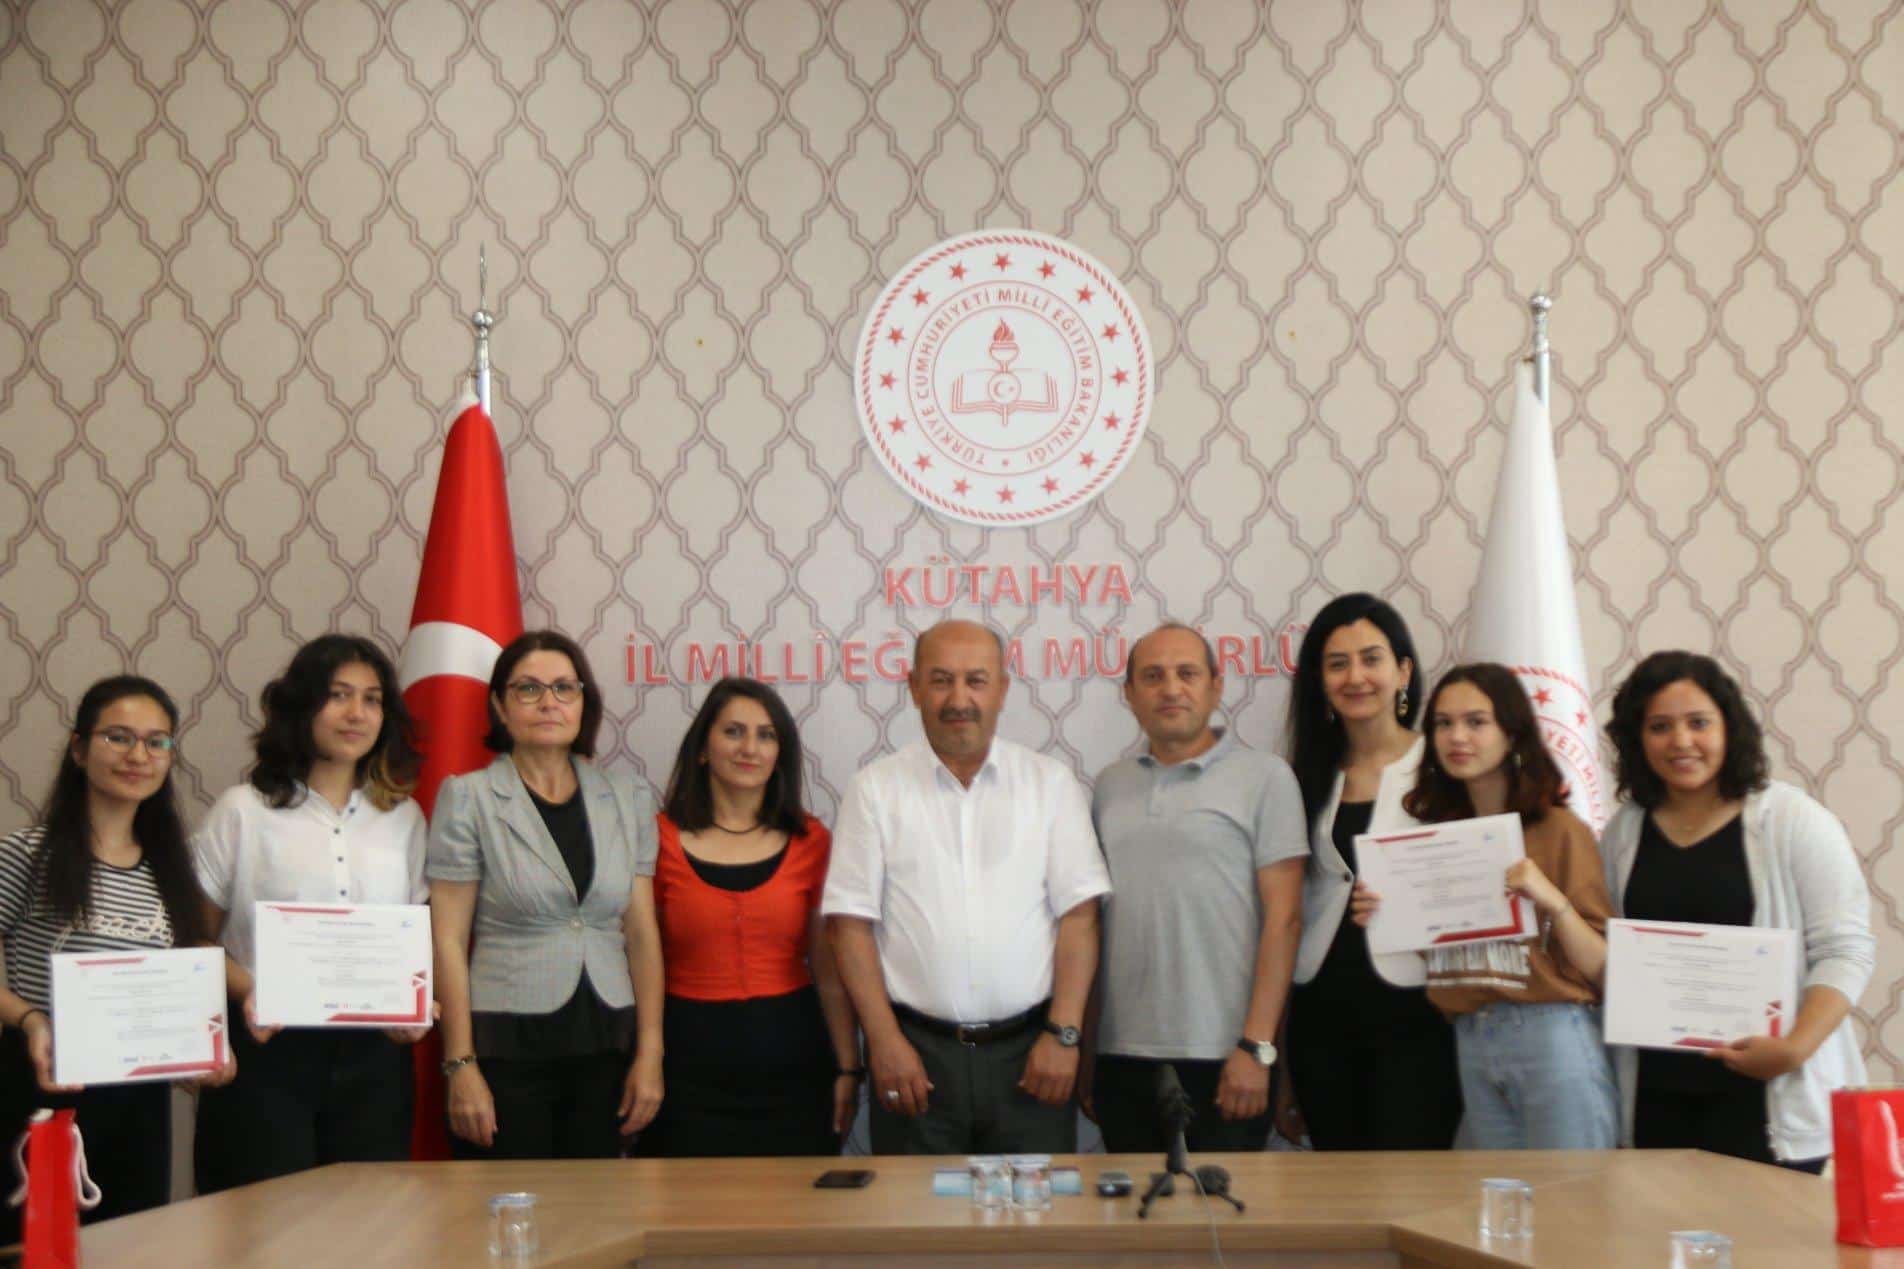 Kütahya Lisesi Türkiye birincisi oldu